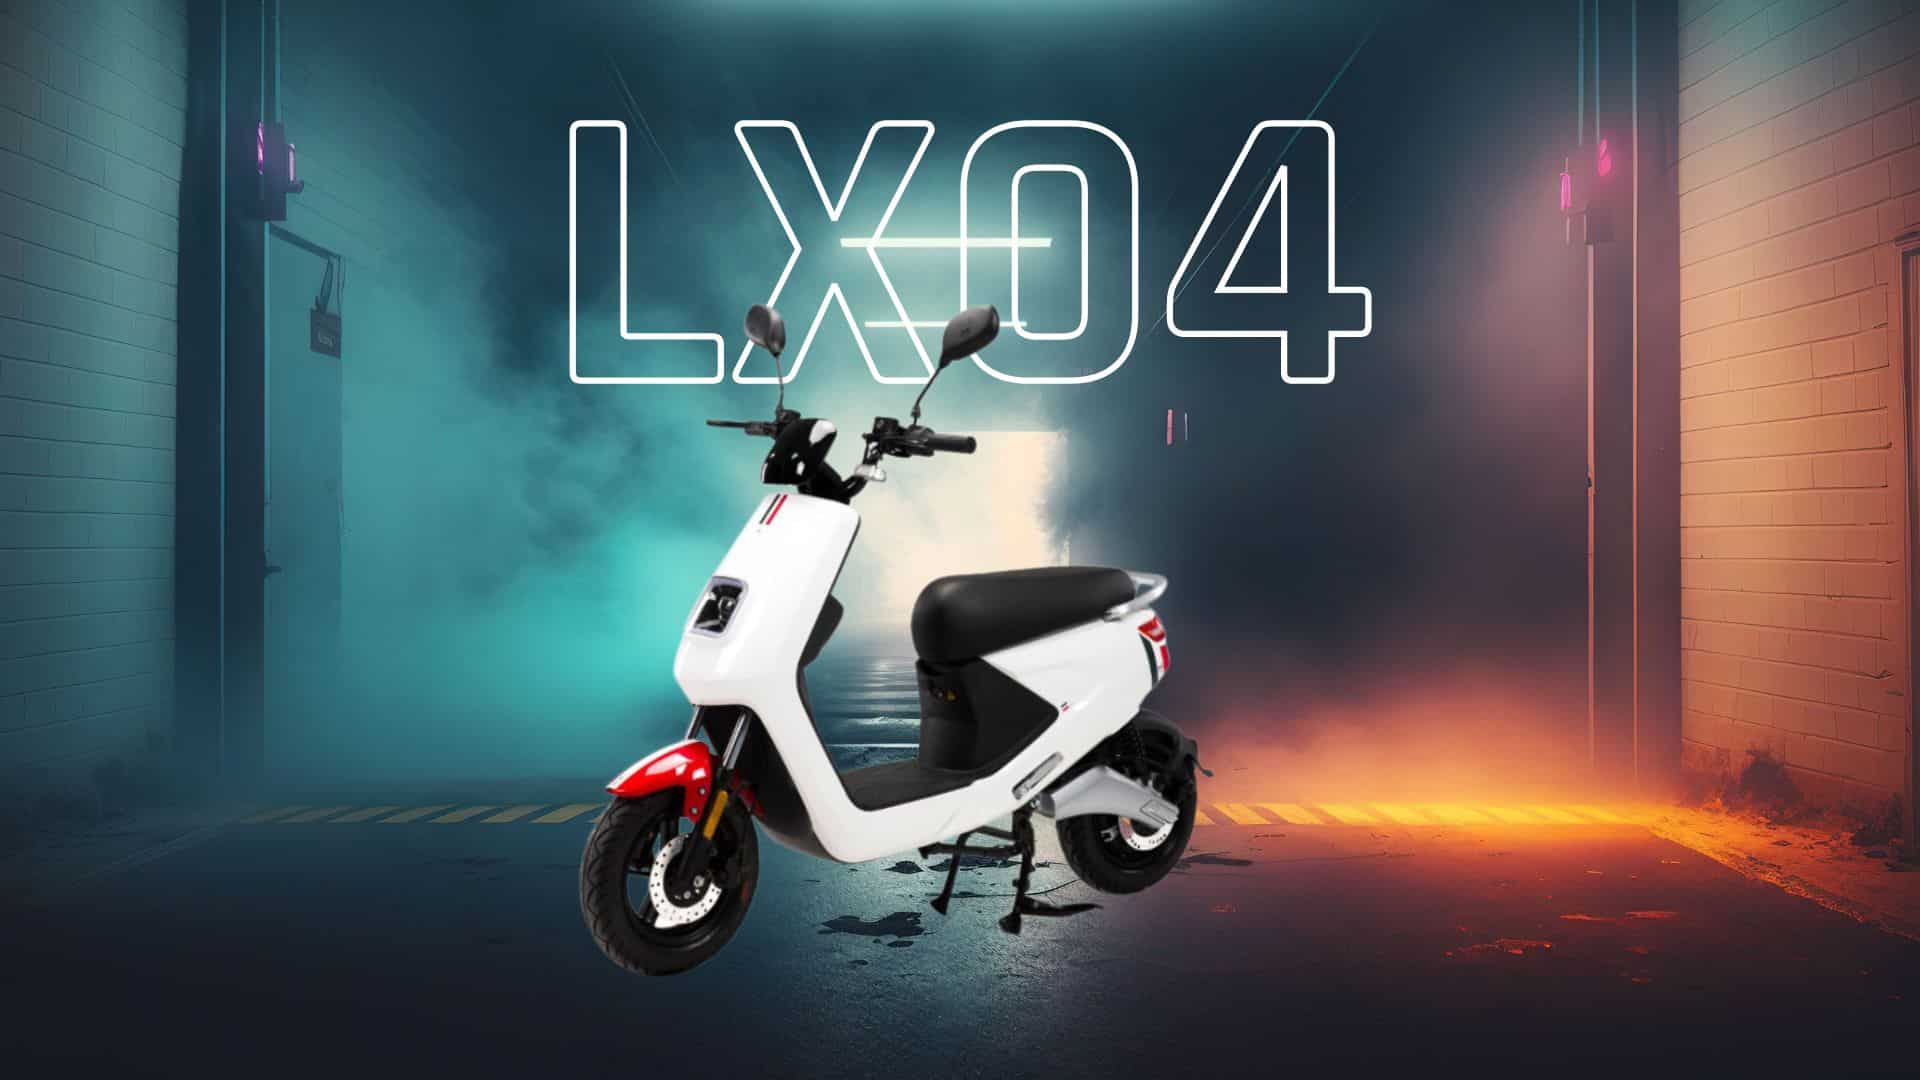 LX04 från LV Scooter. El moped klass 1. Billig och prisvärd med många funktioner.